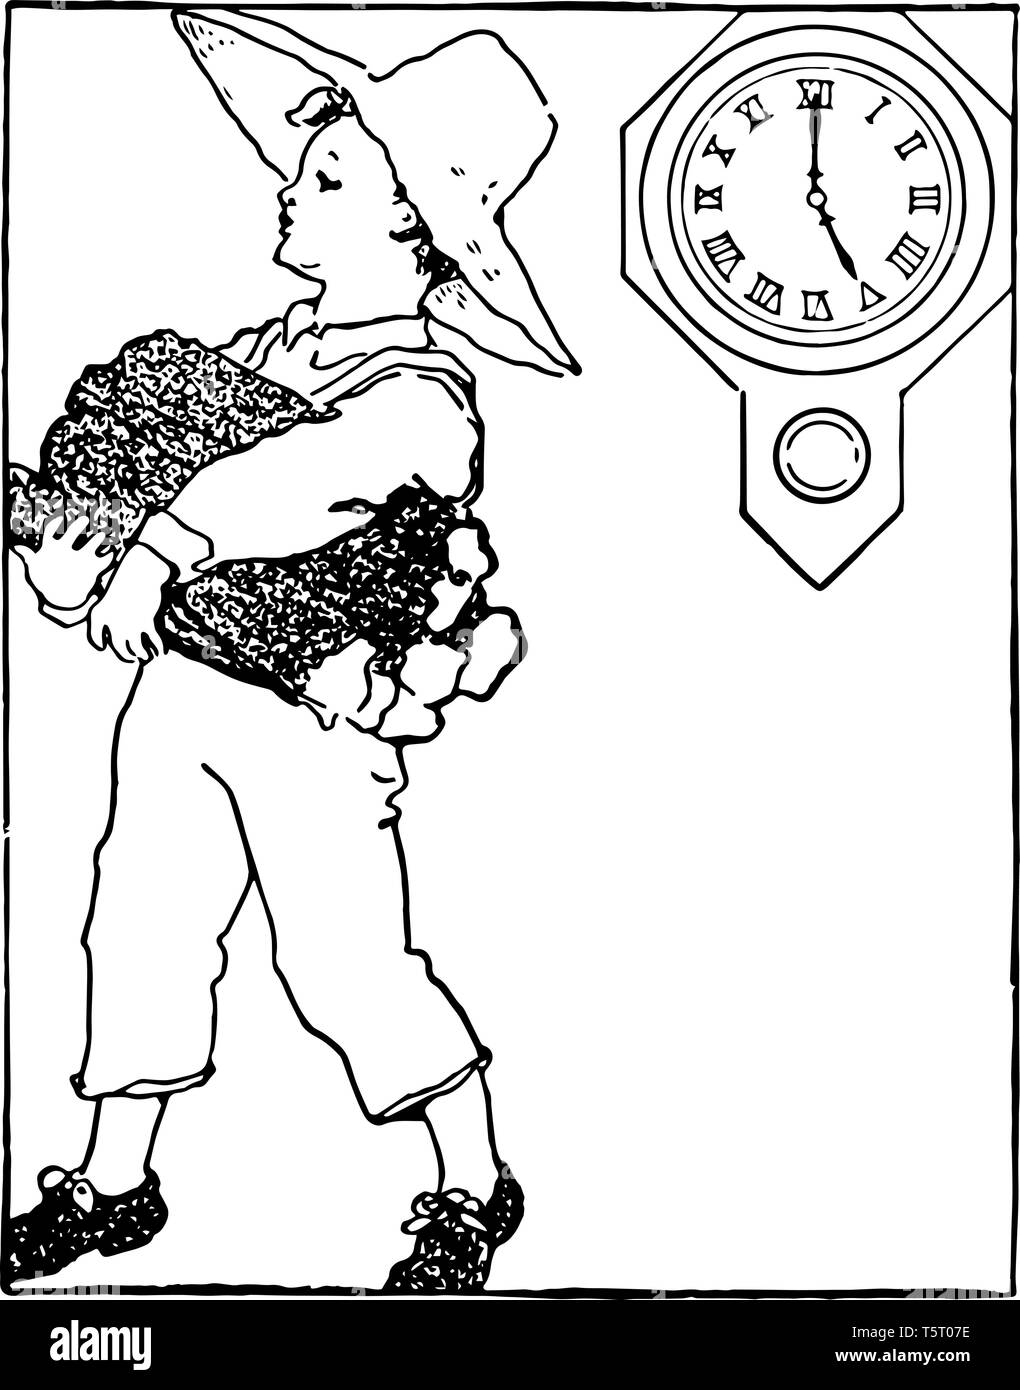 Un bambino è in possesso di un mucchio di pezzi di legno e indossando un cappello sulla sua testa con orologio che indica il tempo di 5:00, vintage disegno della linea o incisione illustratio Illustrazione Vettoriale